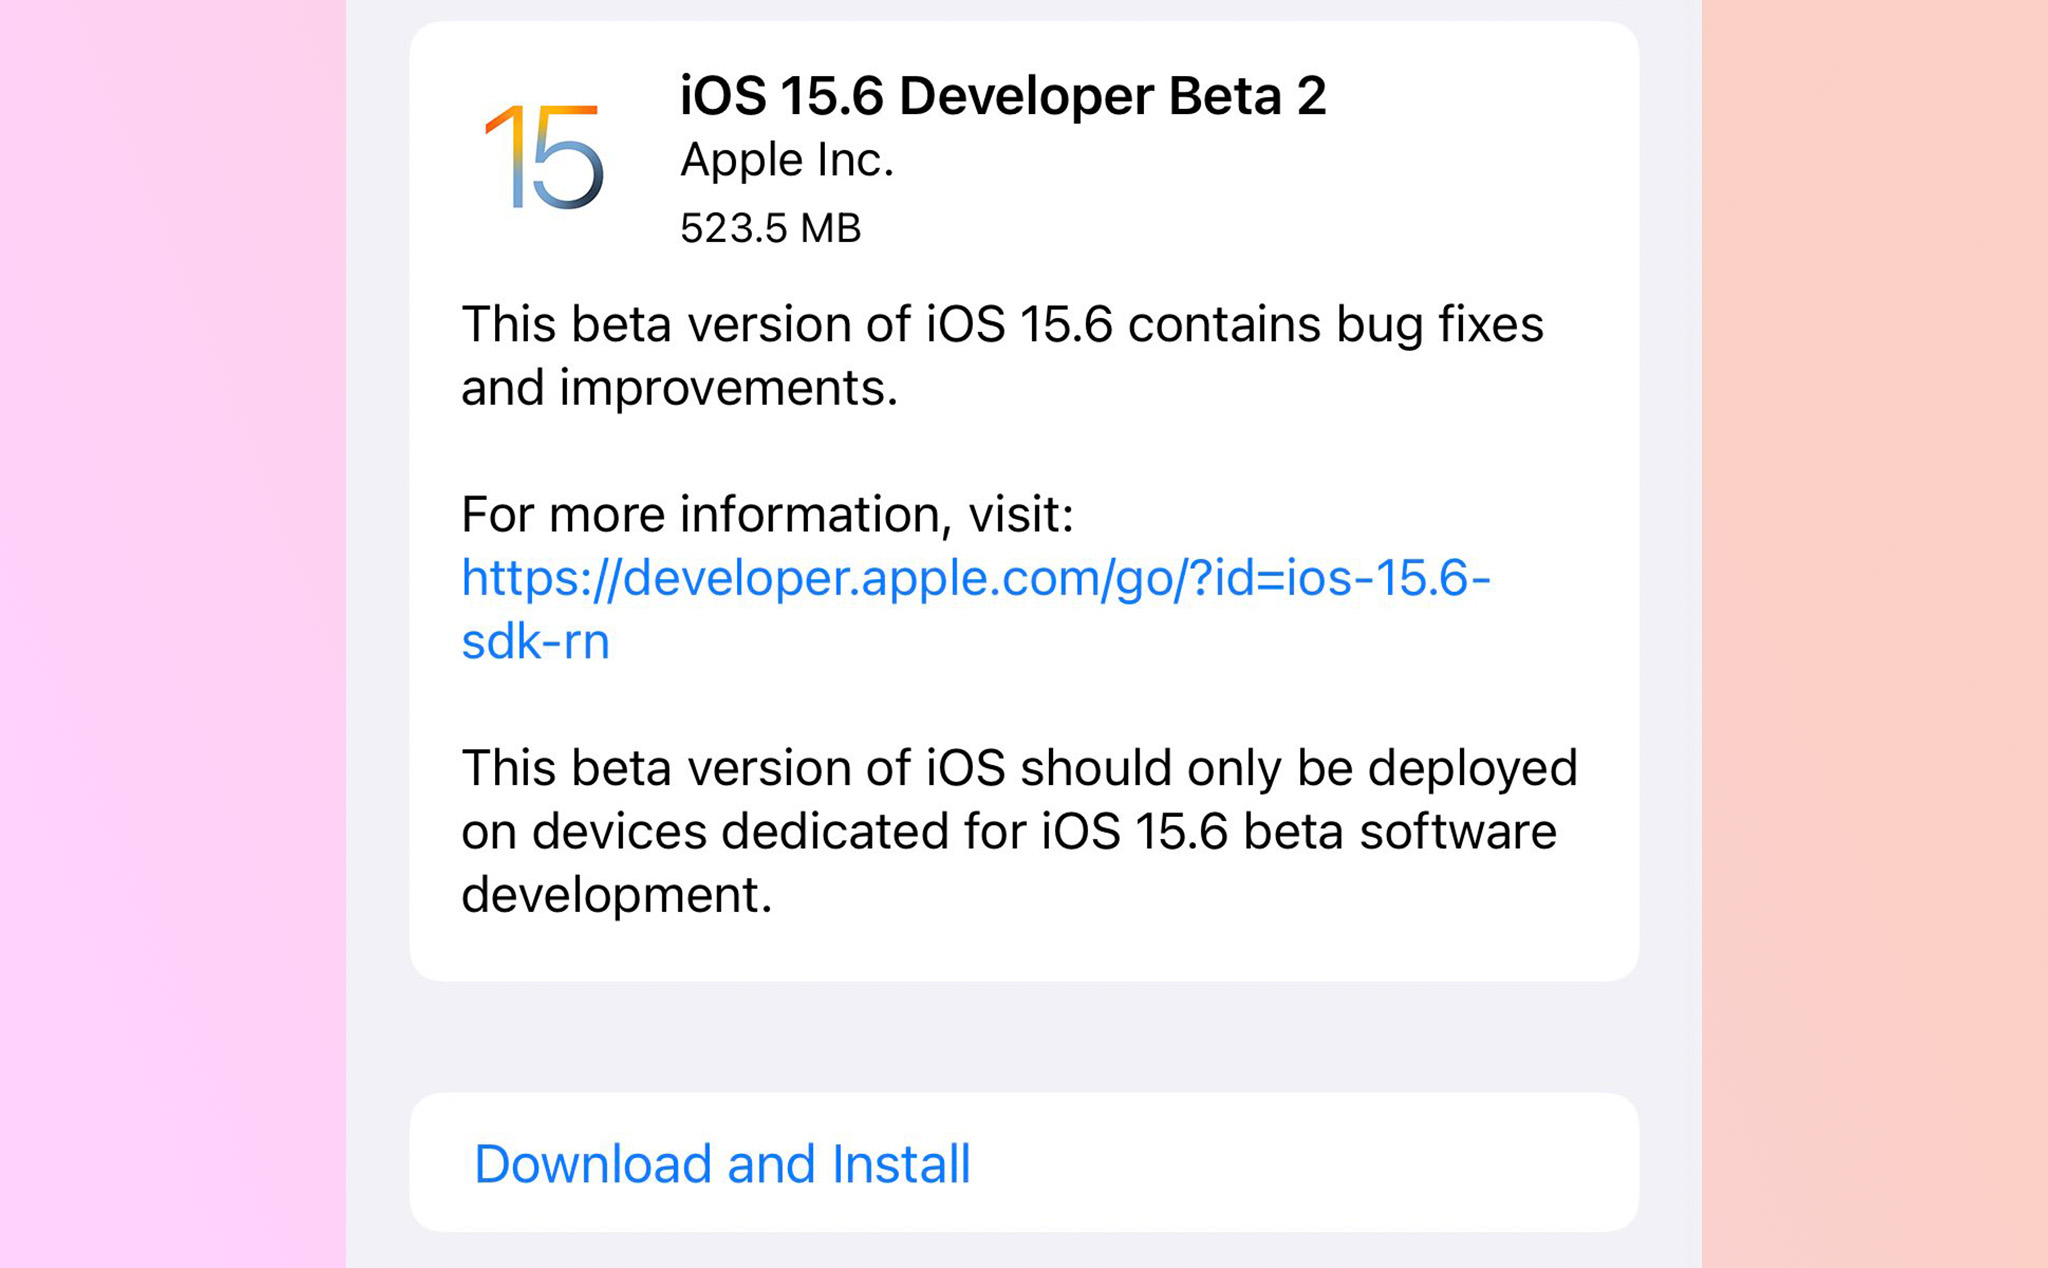 Apple phát hành iOS 15.6 Developer Beta 2